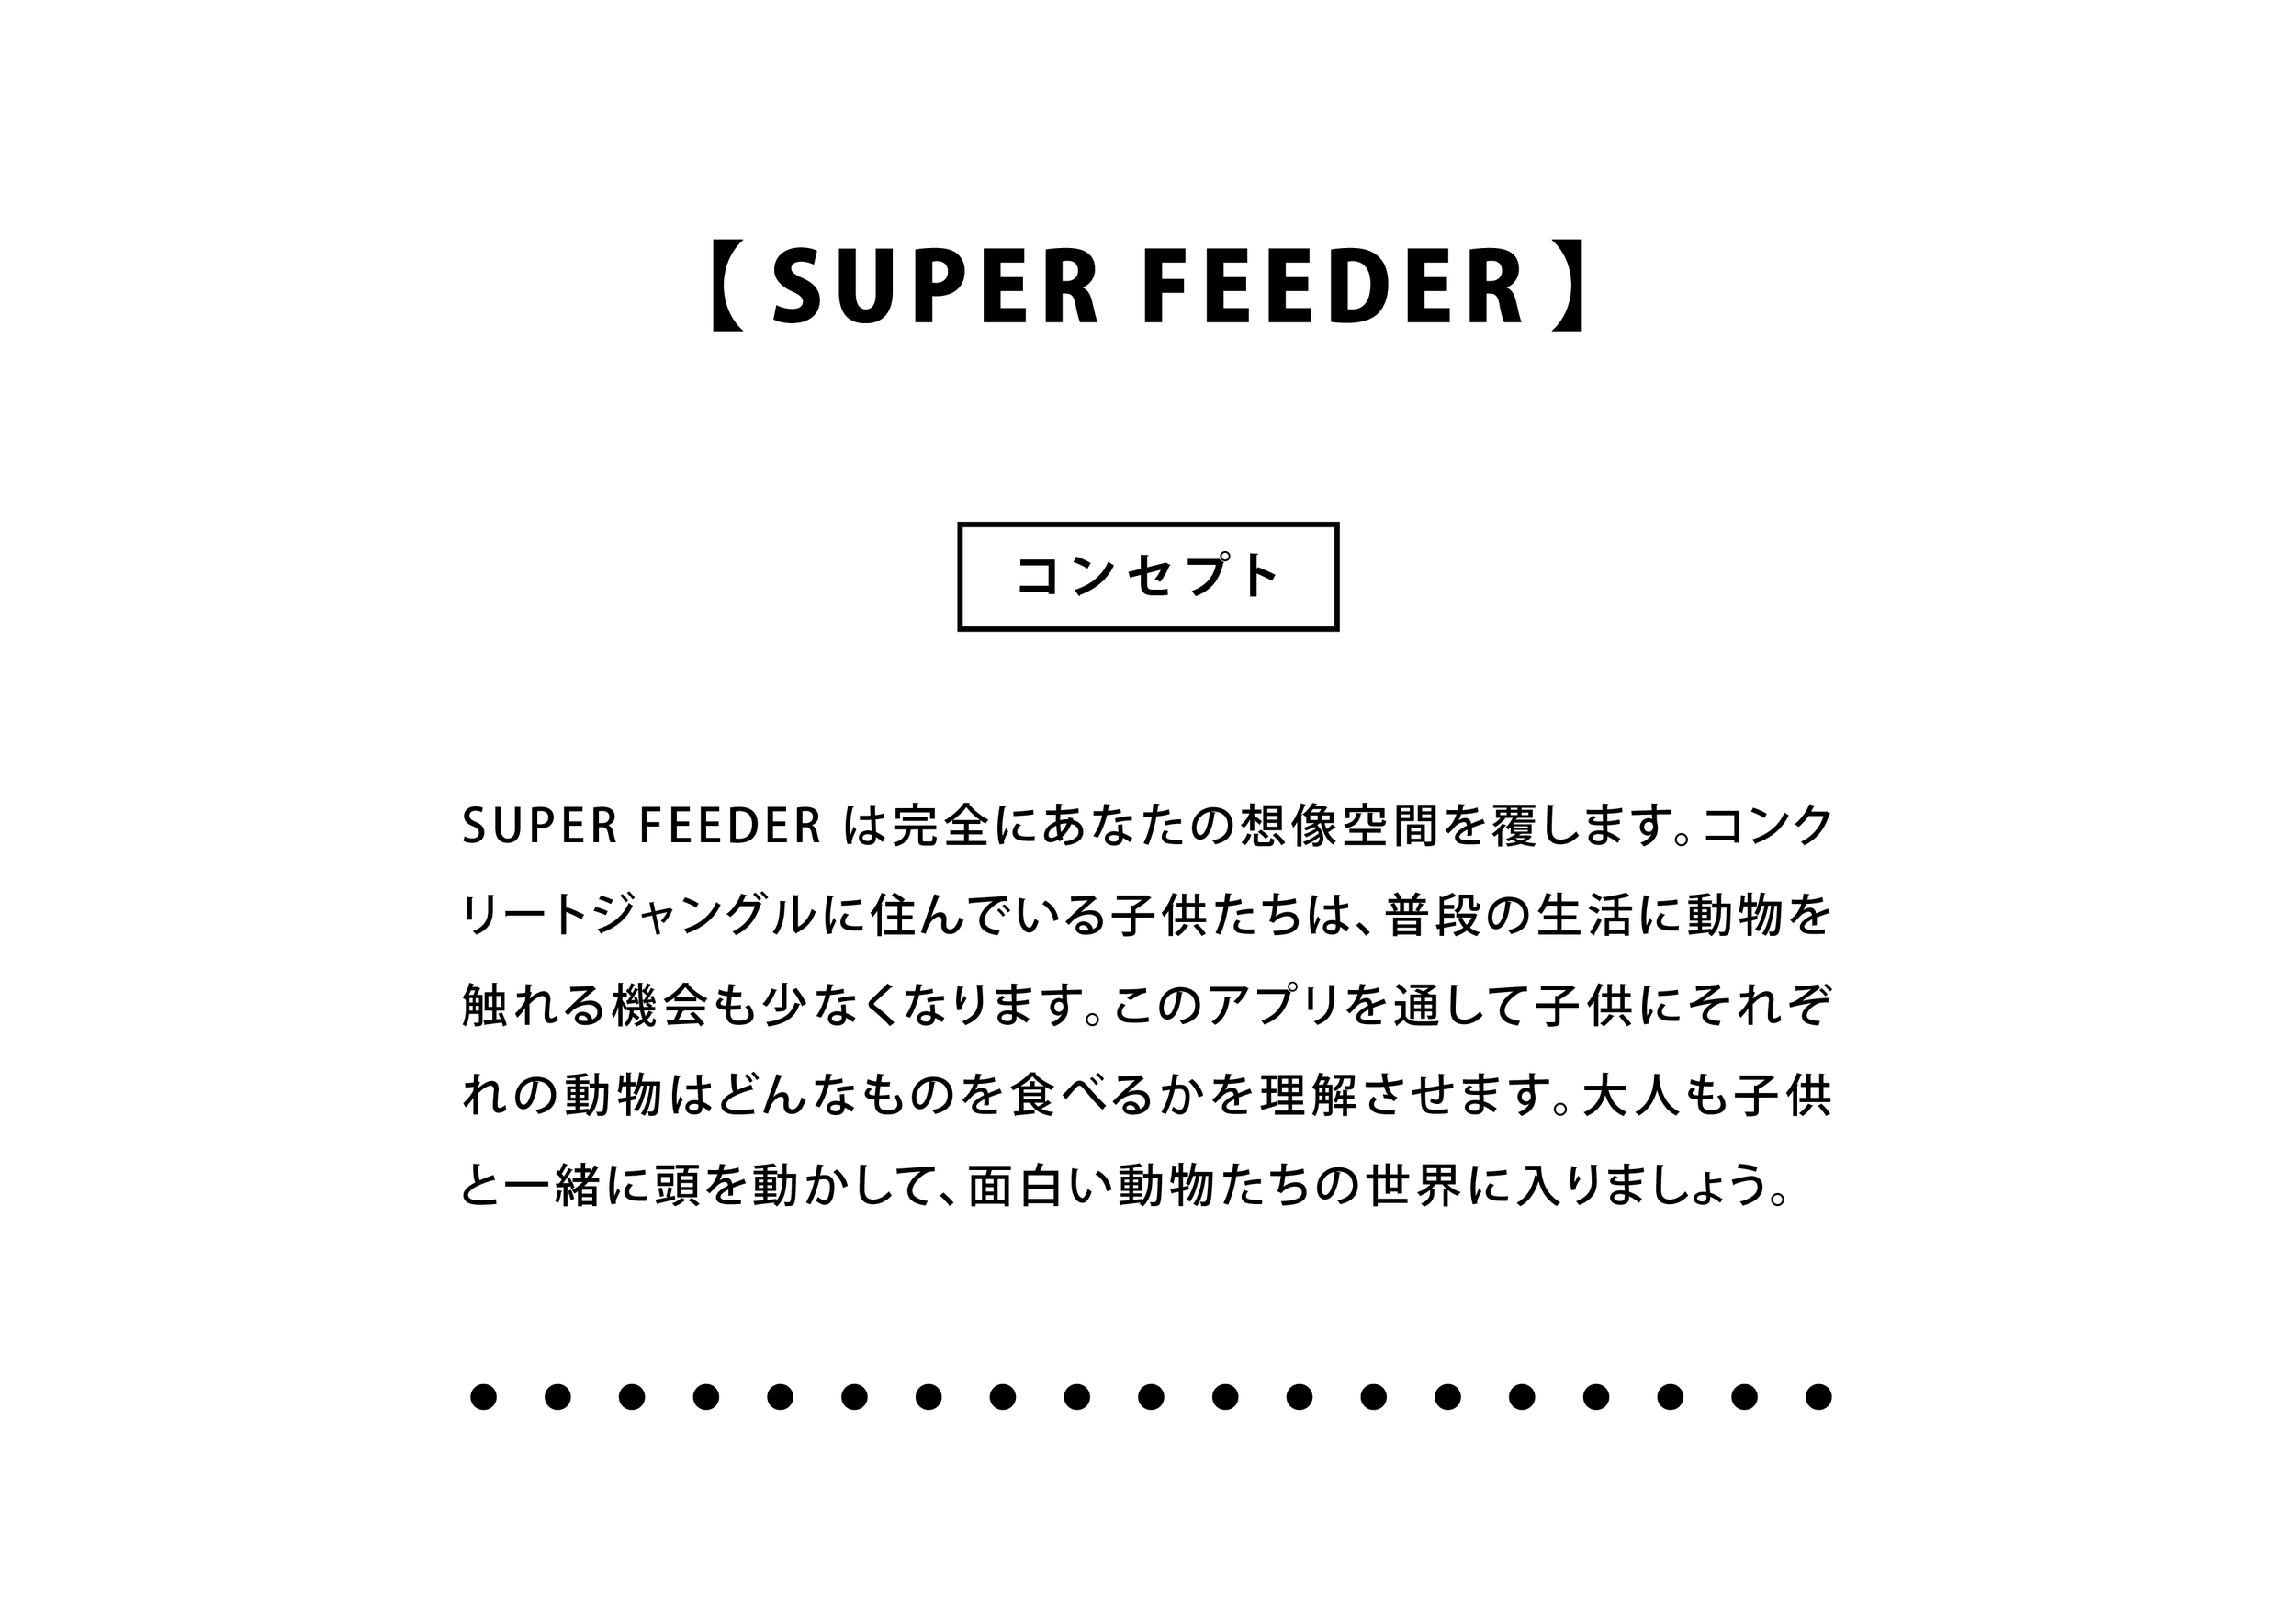 Promotion Kits_Super Feeder-02.png